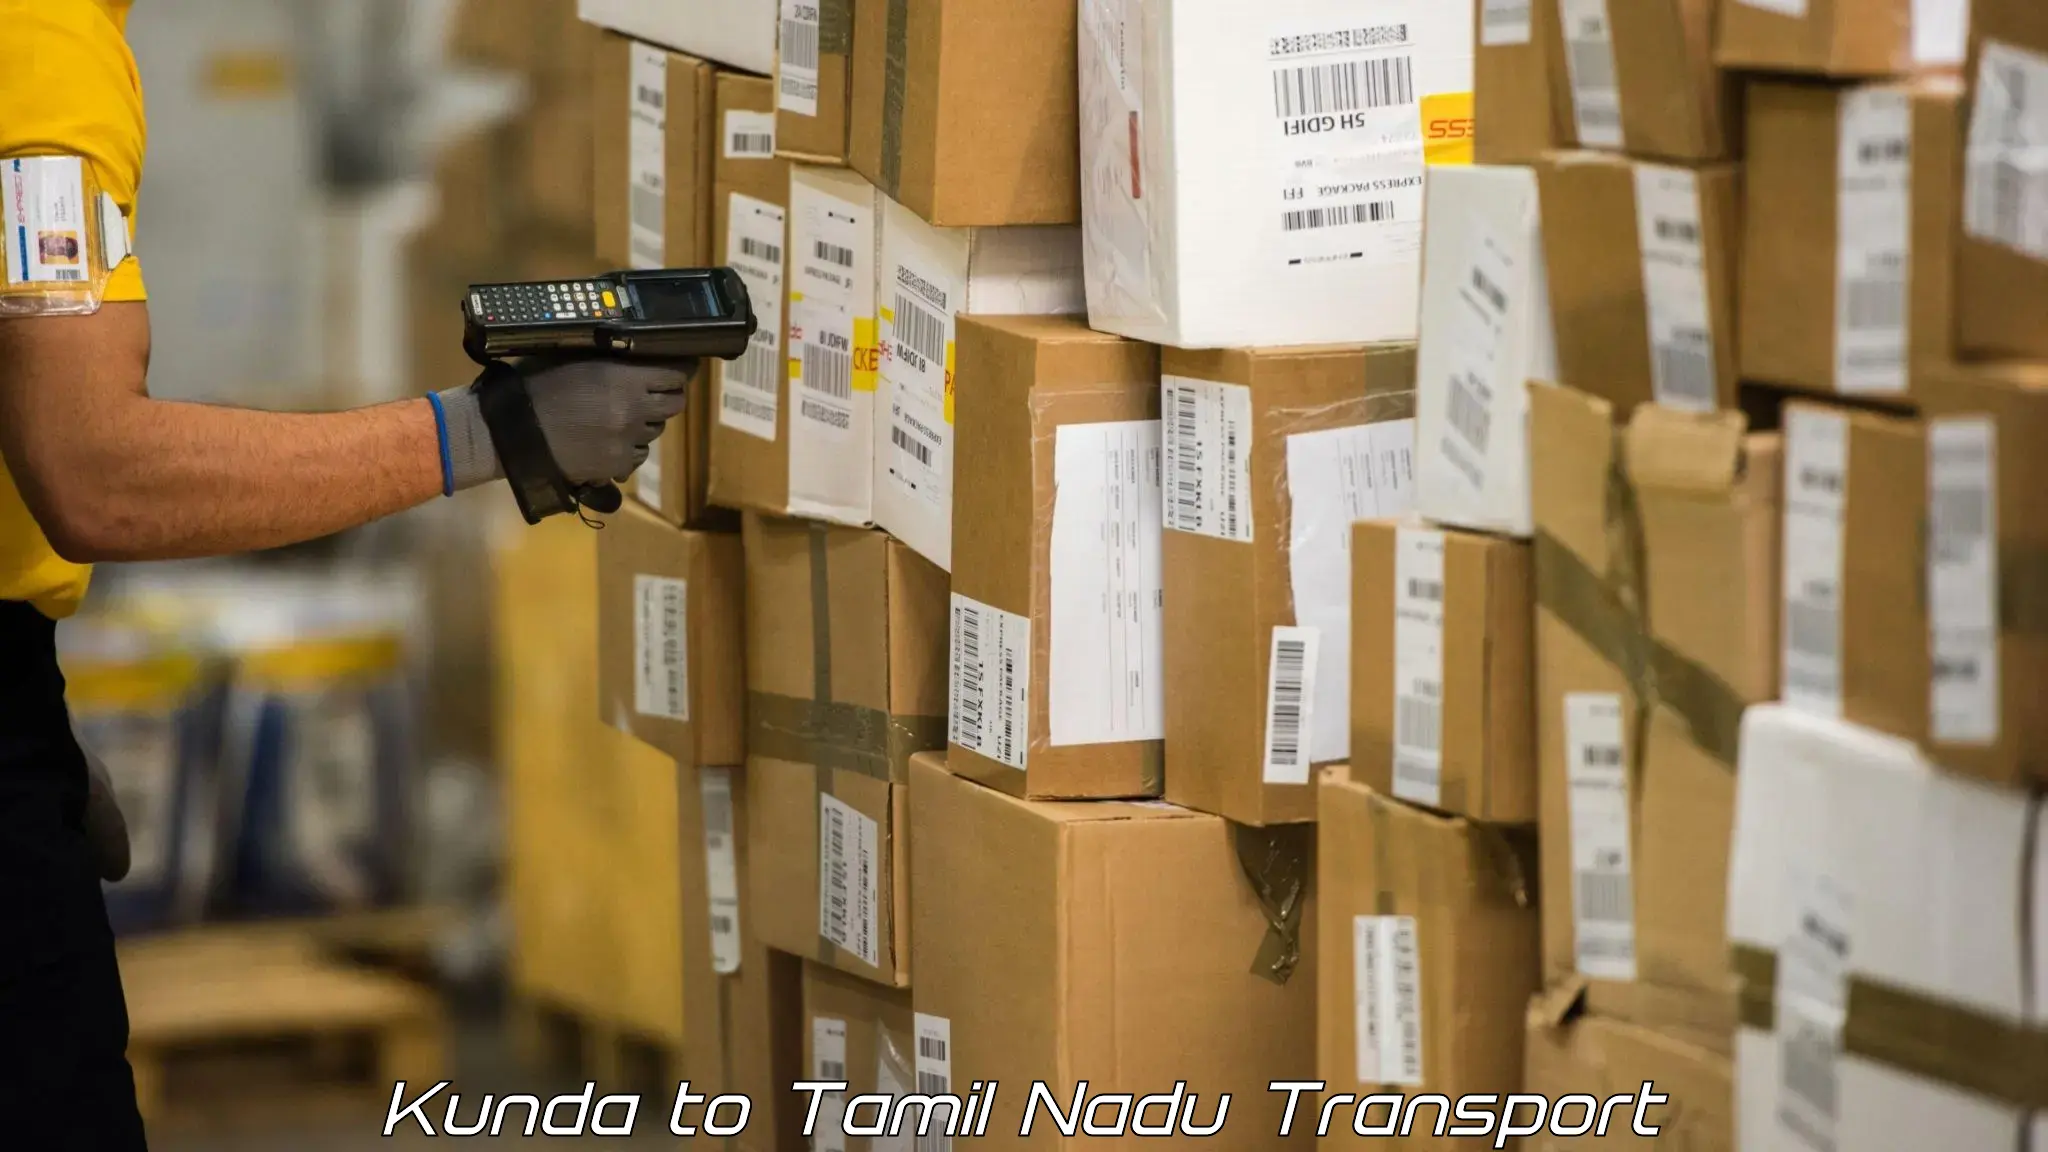 Transport in sharing Kunda to Tuticorin Port